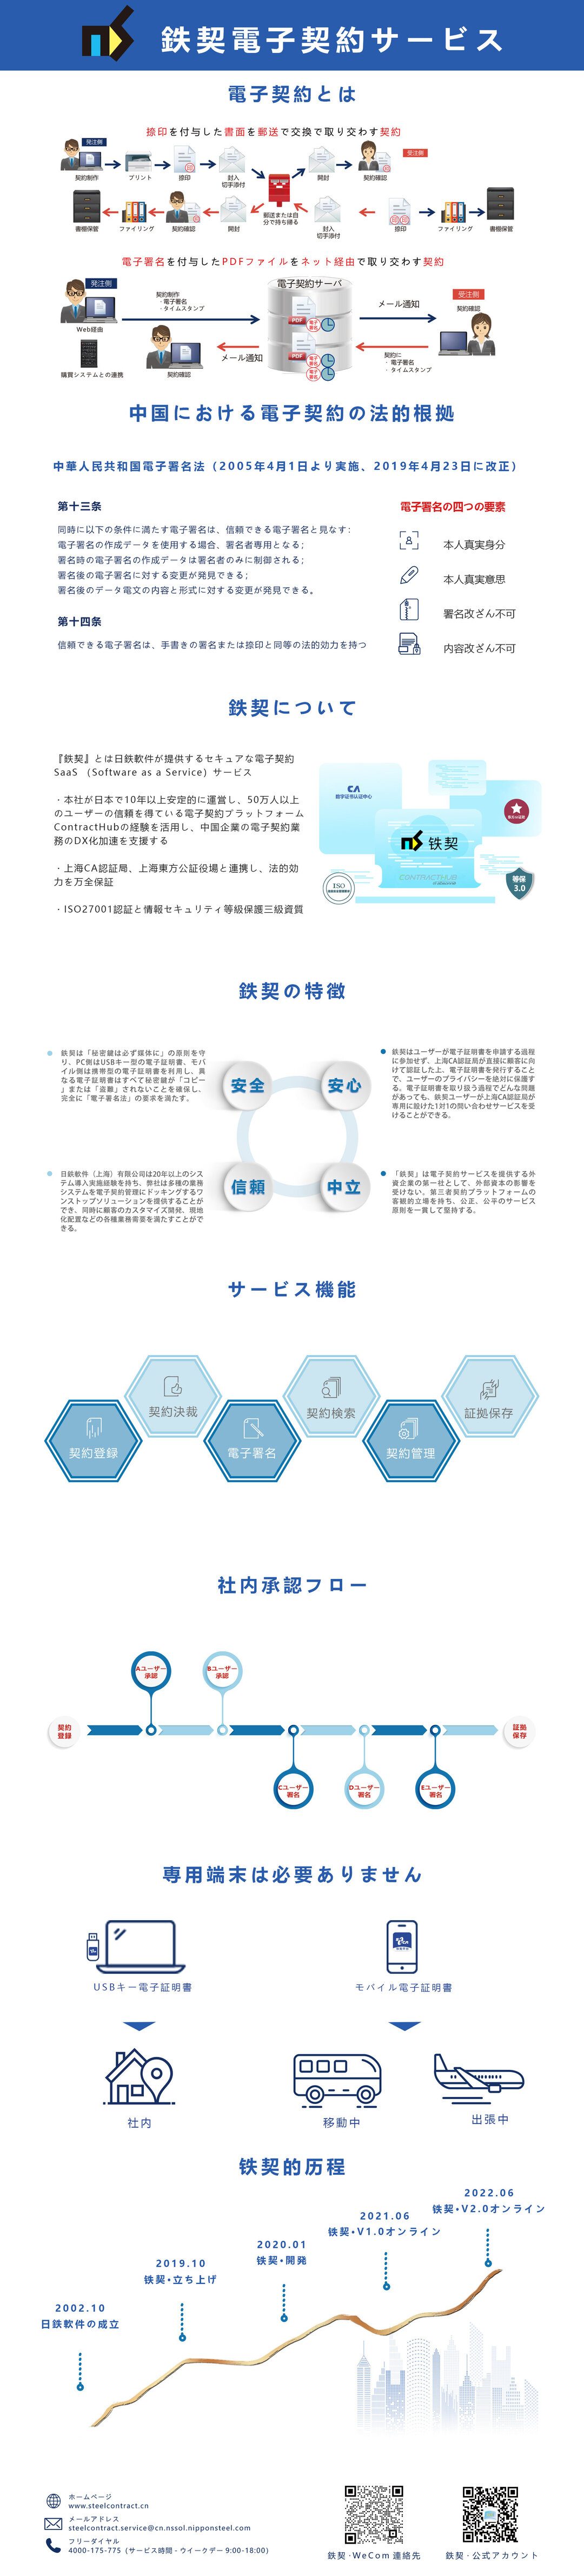 铁契页面-1日文（已更新二维码）.jpg